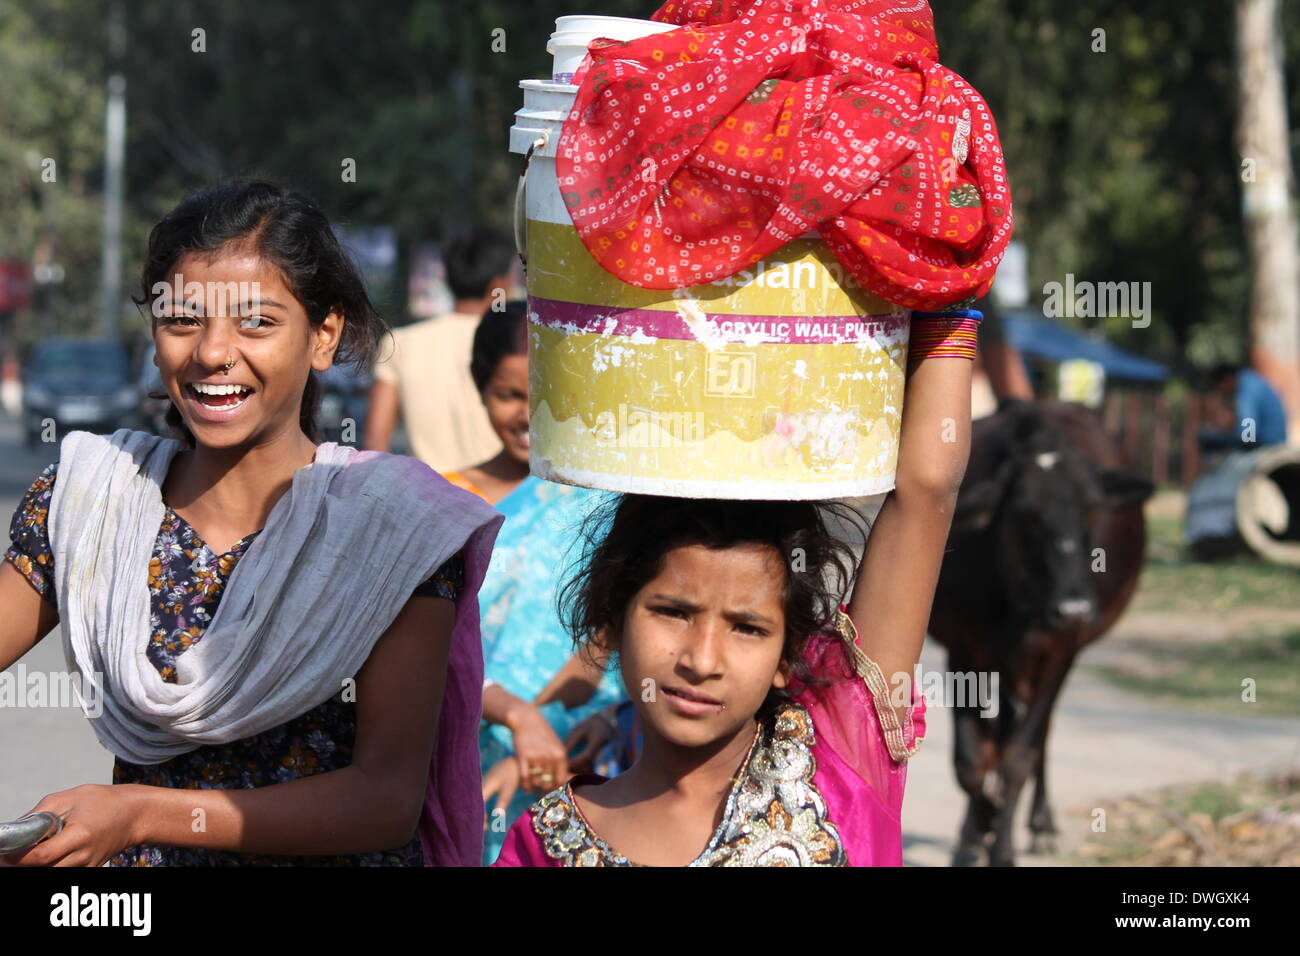 Bailey Road, Patna, Bihar, Inde, le 08 mars, 2014. Les femmes portent des vêtements à laver à rue sur la Journée internationale de la femme. Photo par Rupa Ghosh/Alamy Live News. Banque D'Images